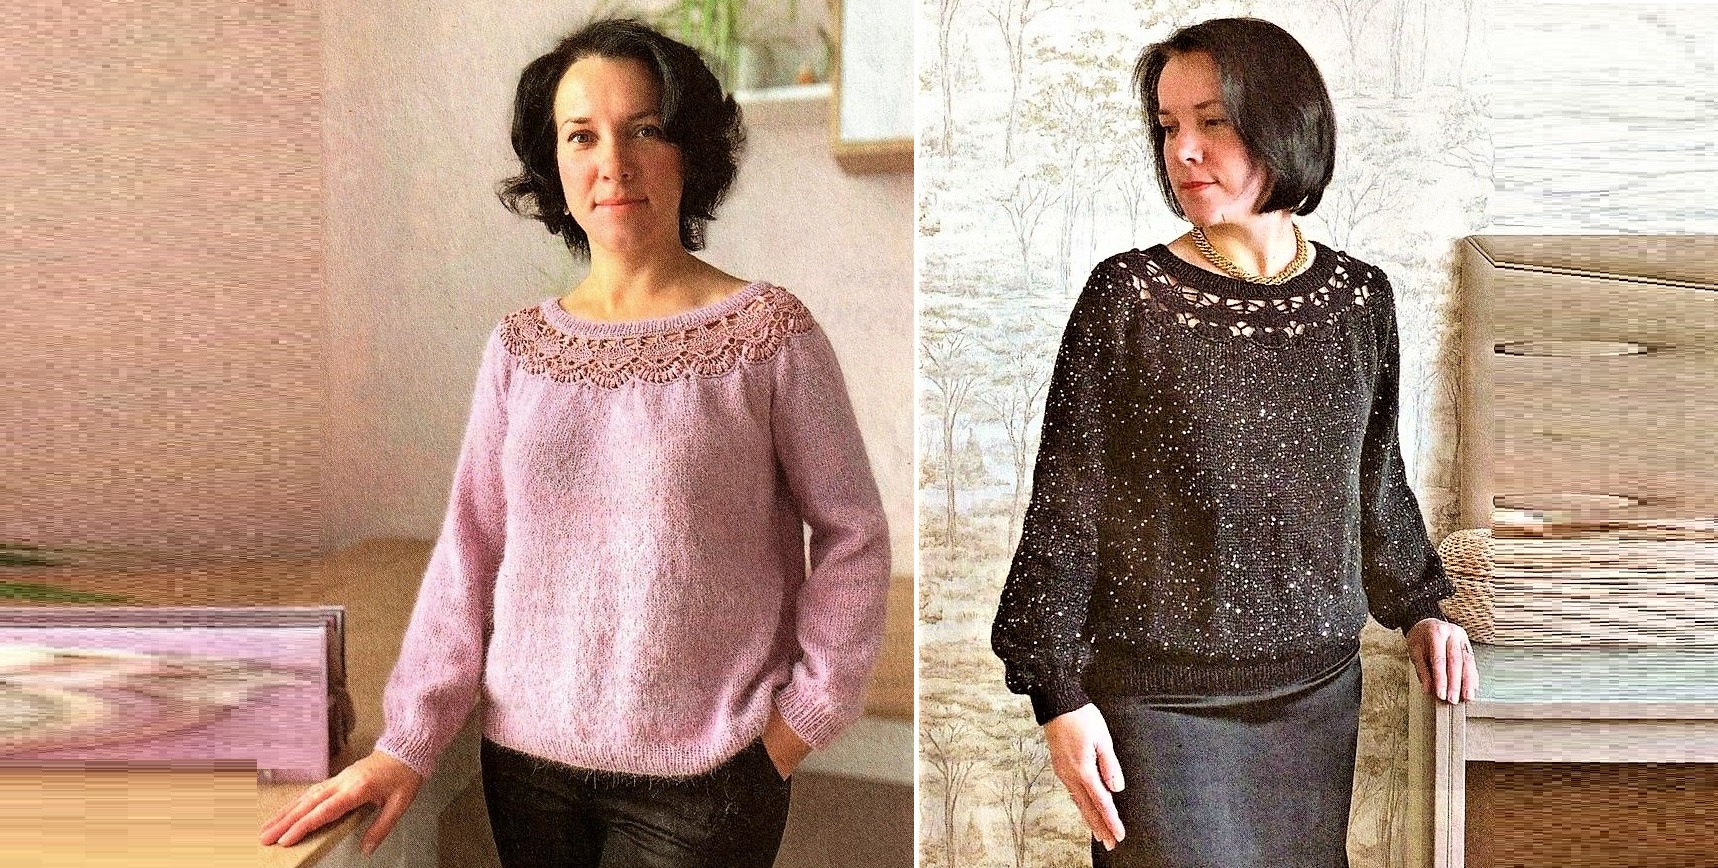 Пуловер спицами для женщин со схемами и описанием: 12 моделей